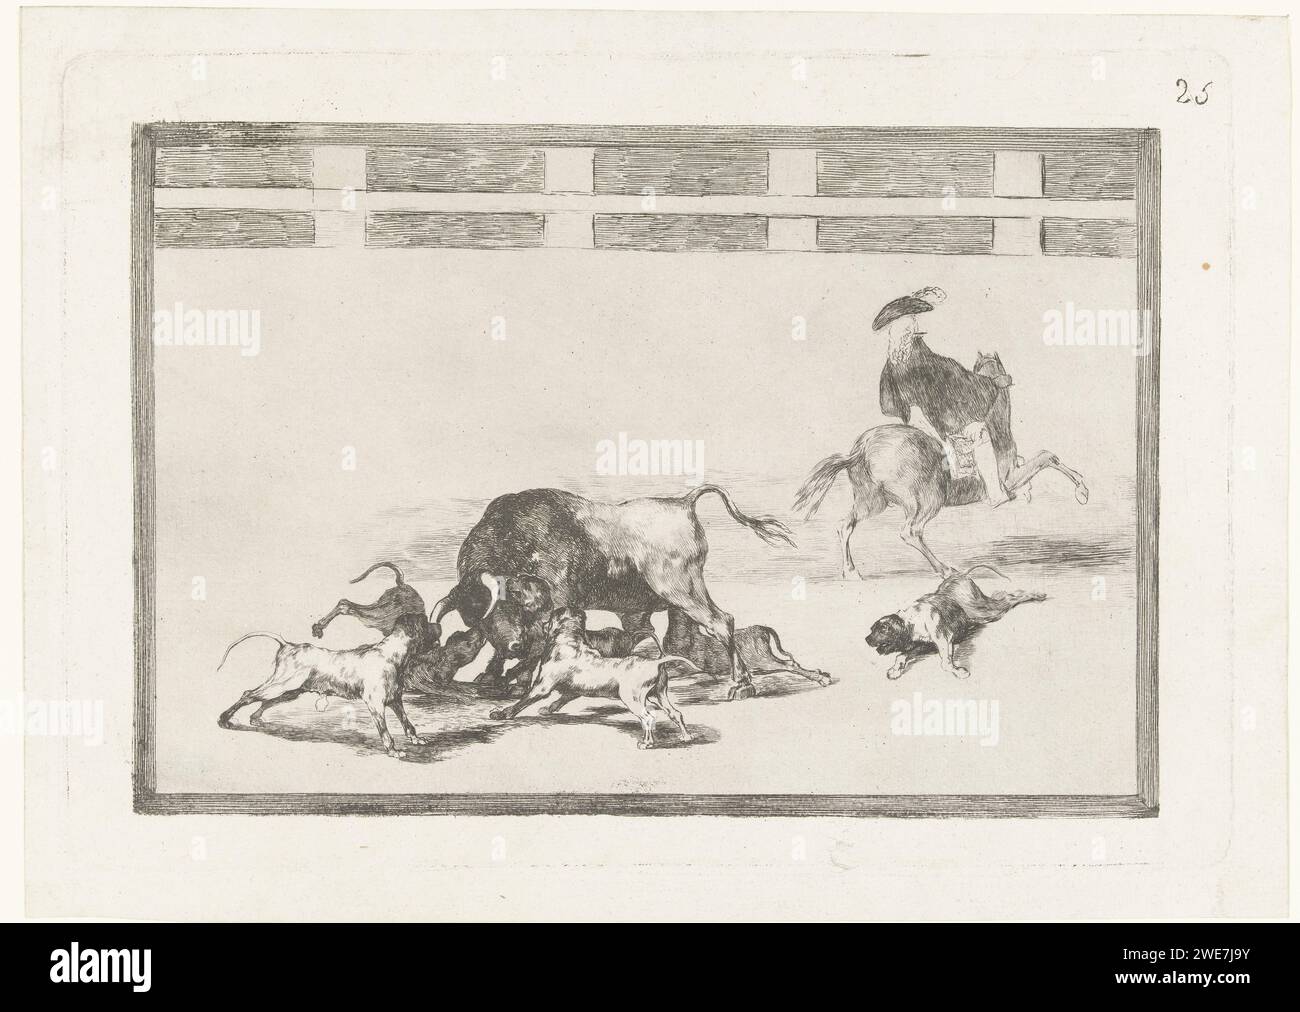 Stier von Hunden angegriffen, Francisco de Goya, 1811 - 1816 drucken fünf Hunde greifen einen Stier in einer Arena an. Ein Hund ist auf dem Boden verwundet. Auf der rechten Seite ein Mann zu Pferd, auf dem Rücken gesehen. Spanien Papierätzung / Trockenspitze Stierkampf Stockfoto